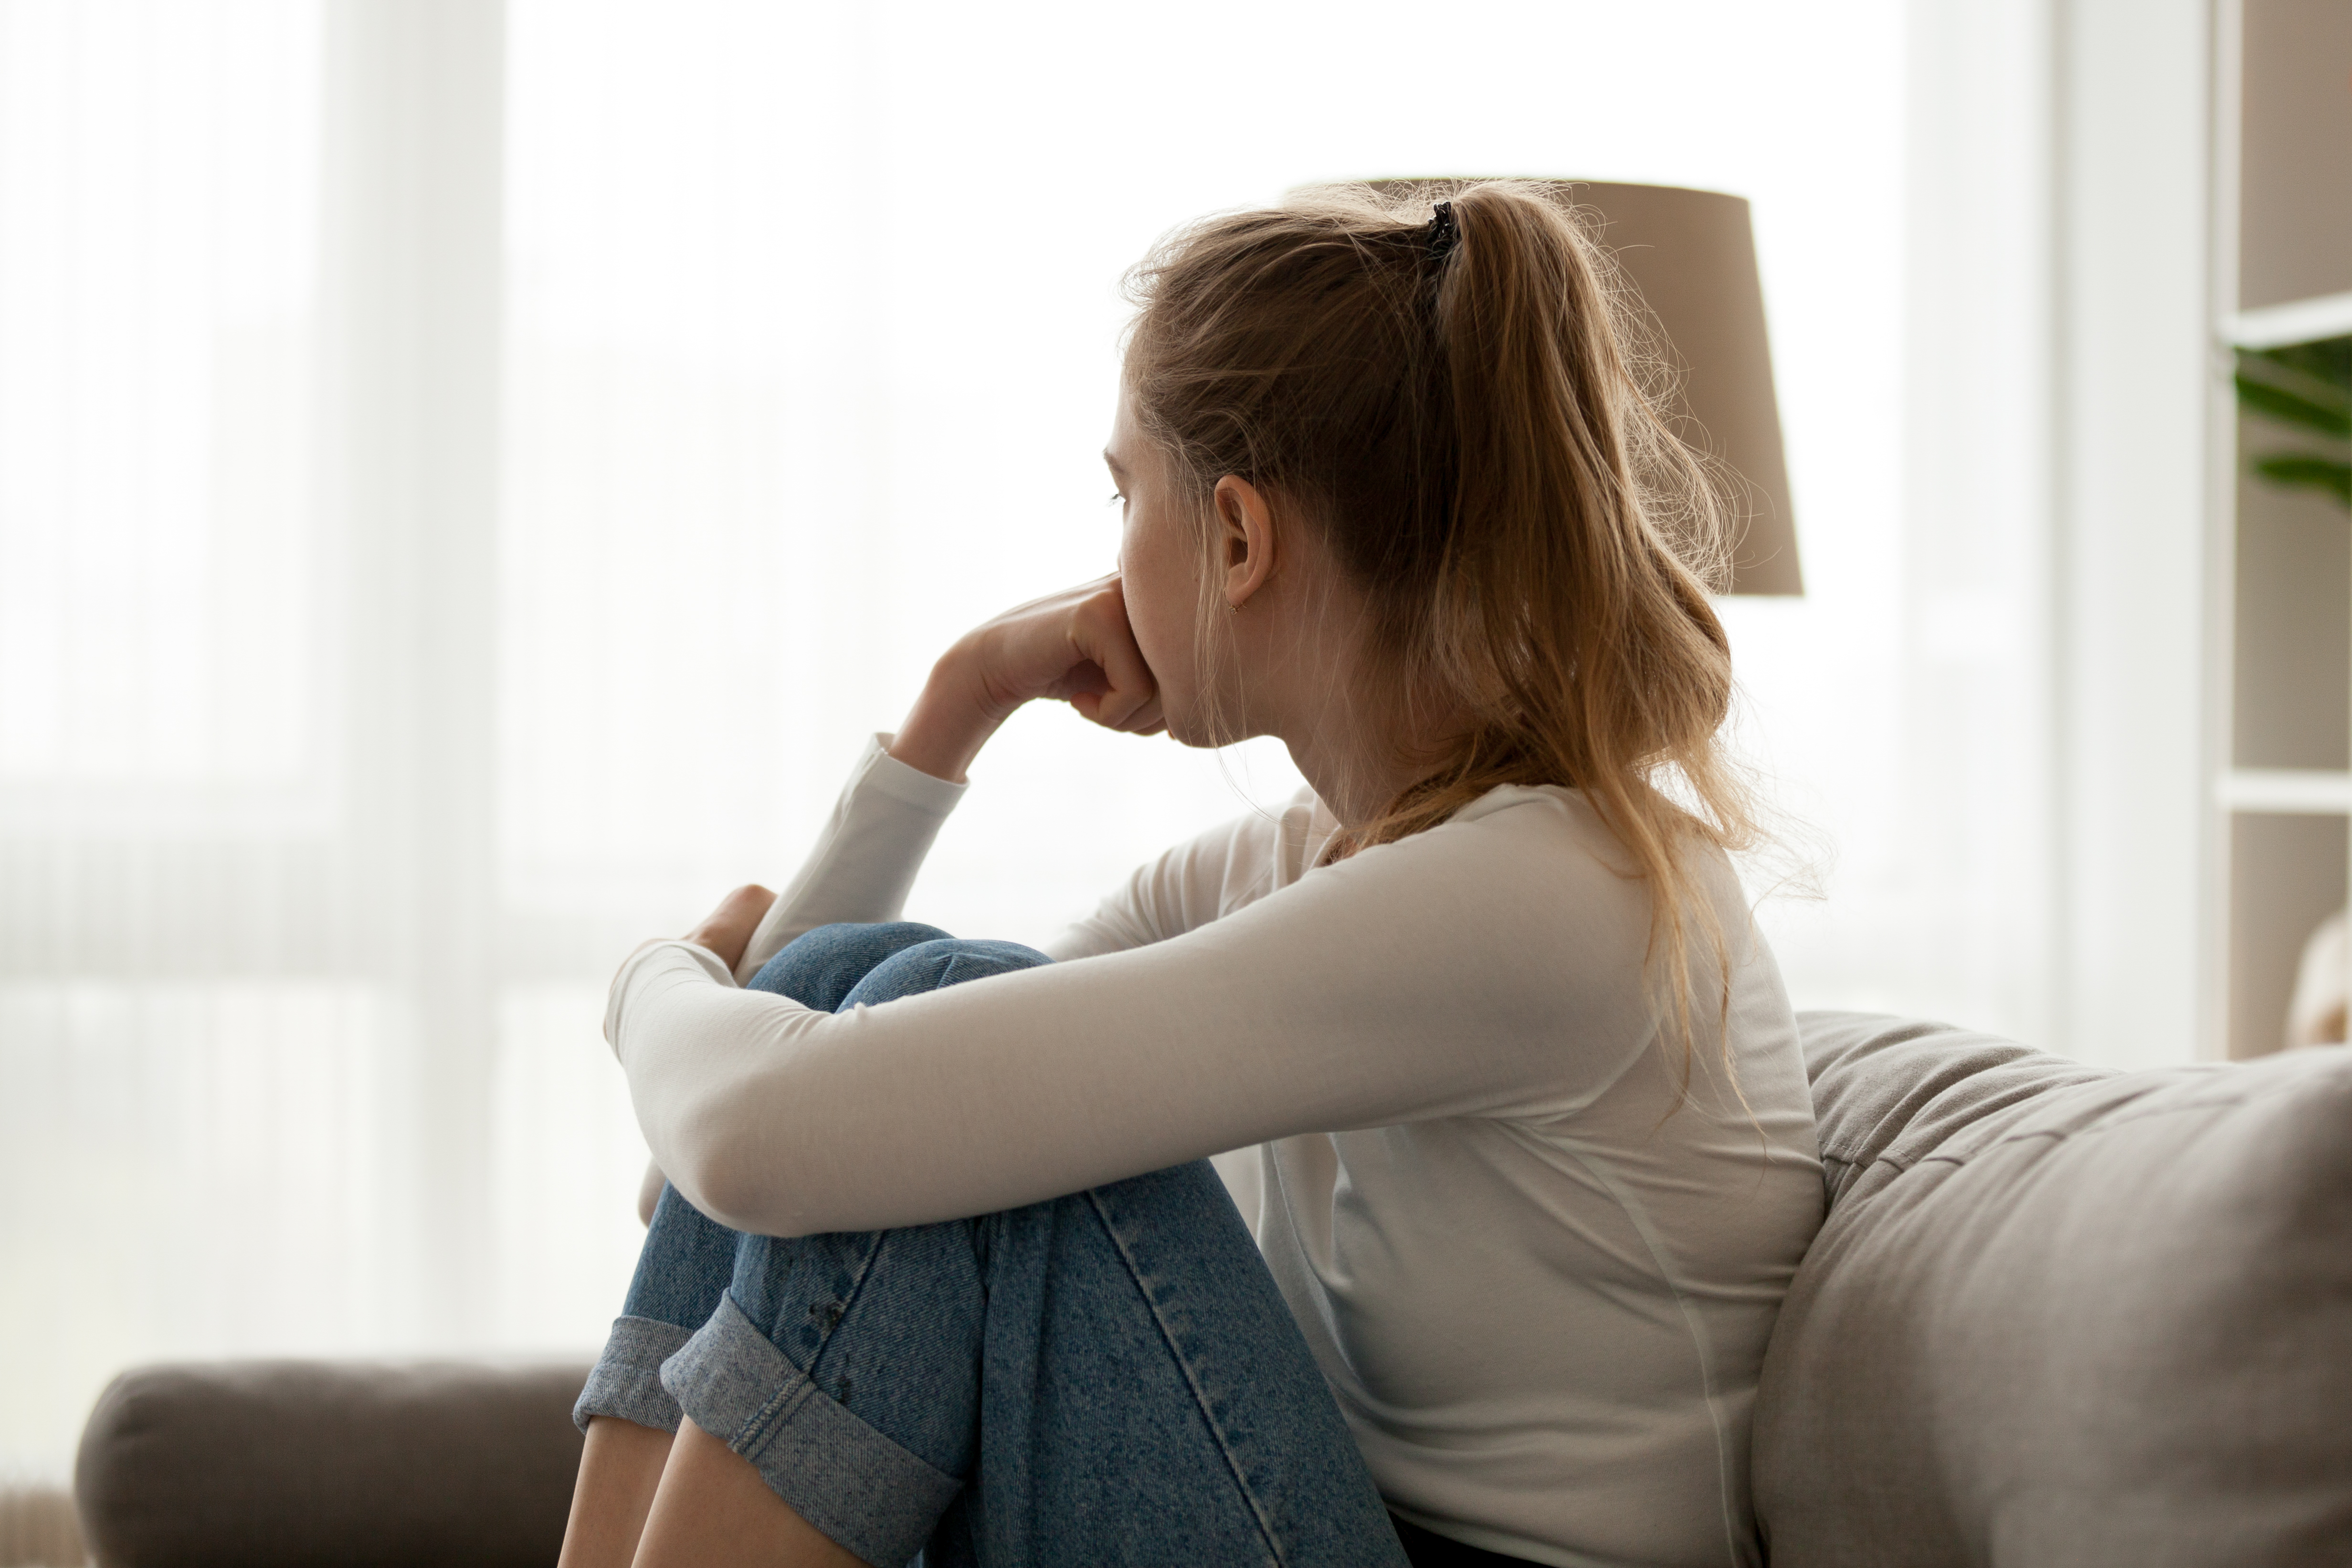 Une jeune femme malheureuse qui regarde la fenêtre | Source : Shutterstock